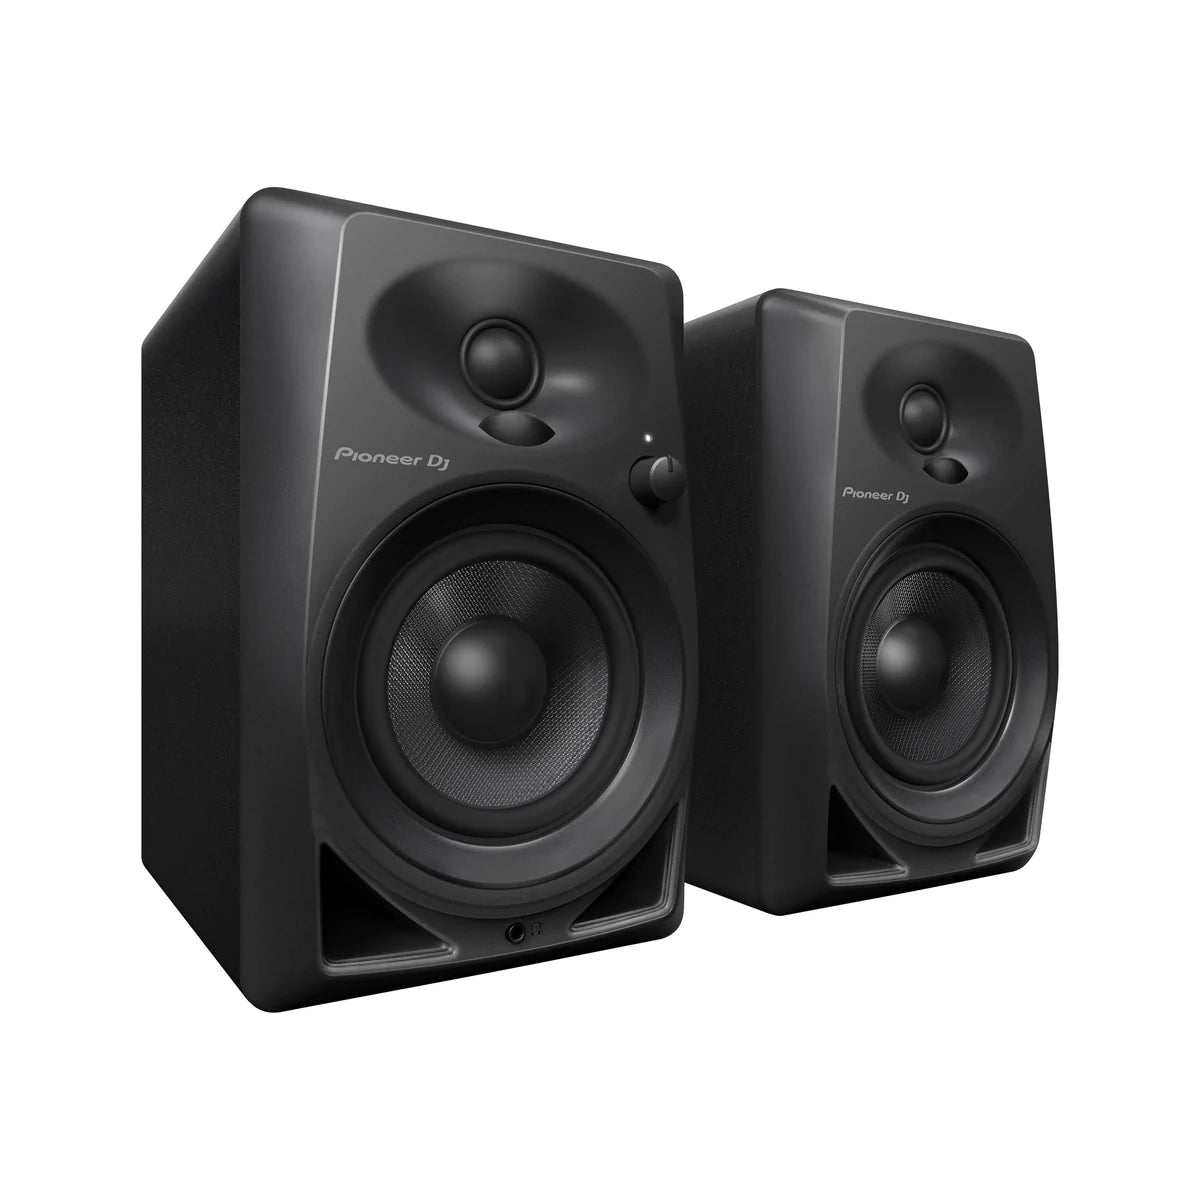 DM-40 Desktop Monitor Speakers (pair) - Black